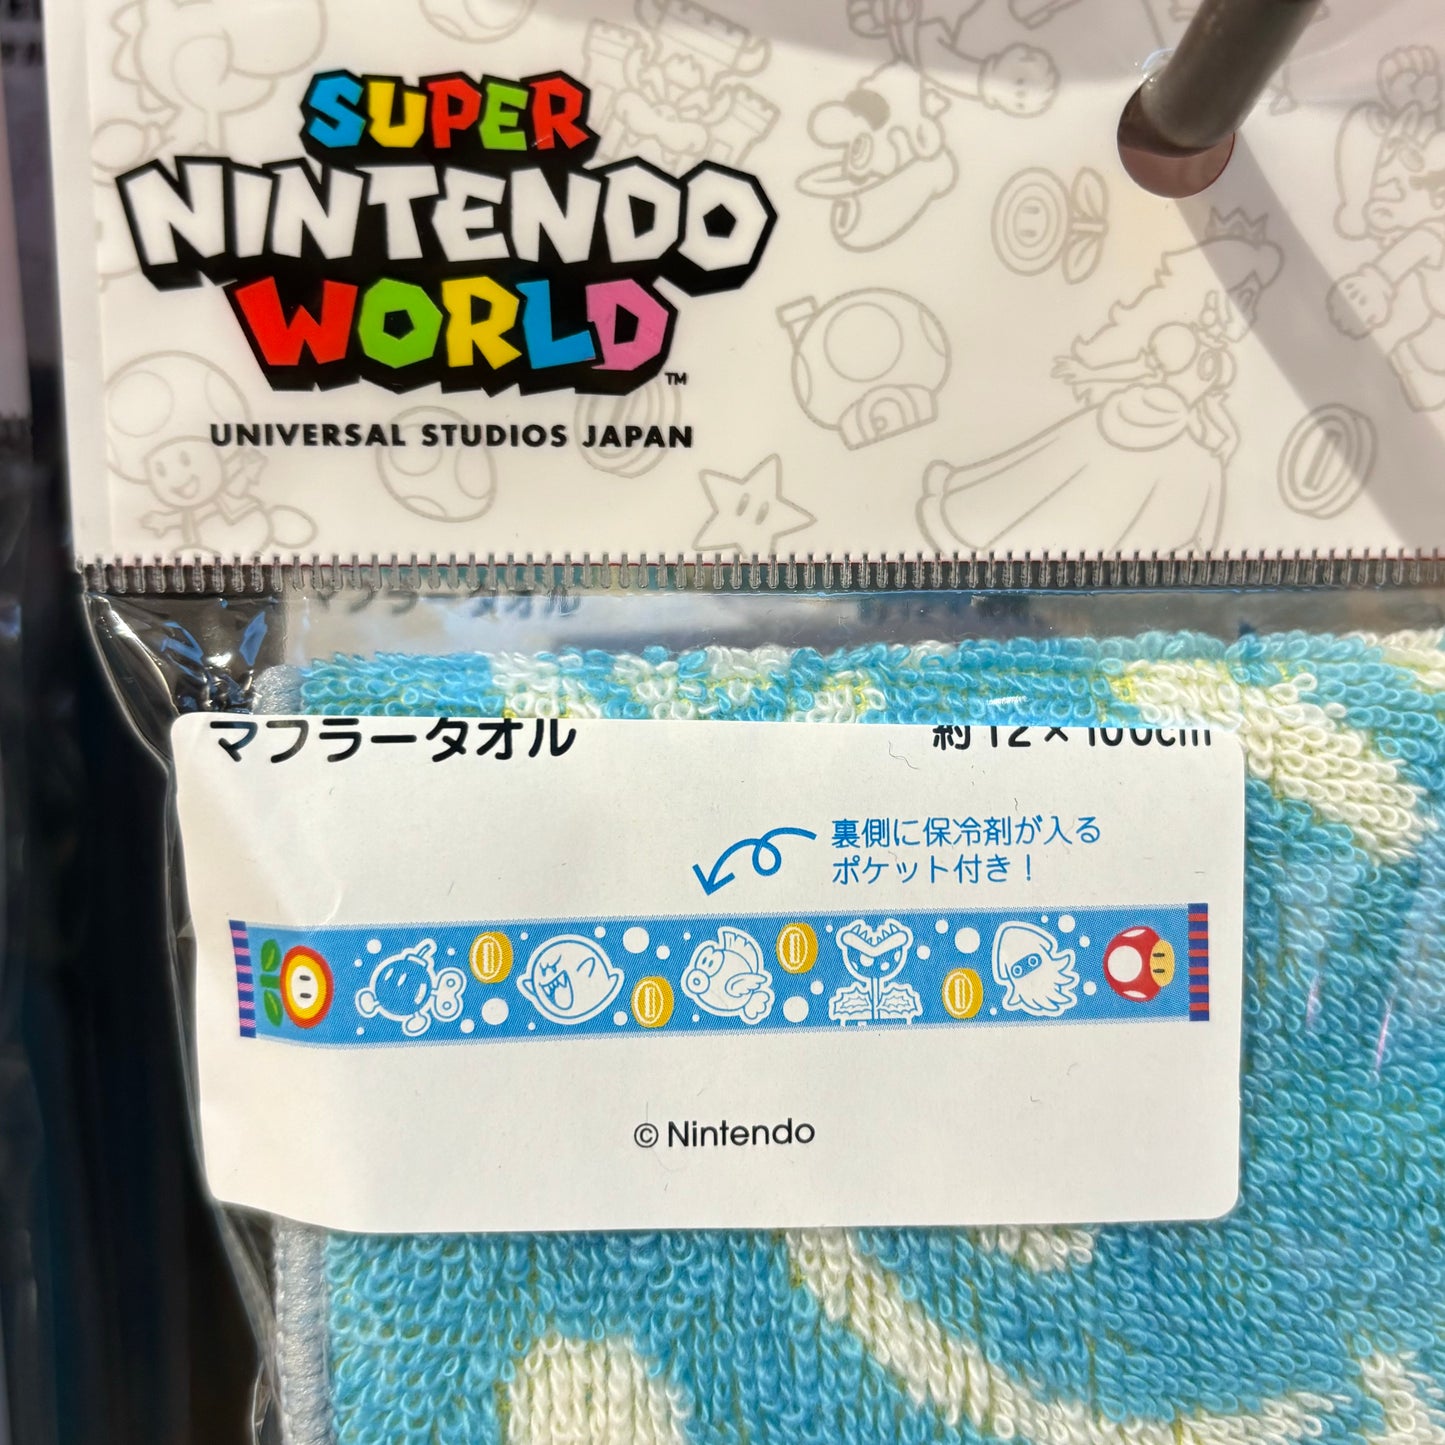 【訂貨】USJ Mario 任天堂世界 掛頸毛巾 長毛巾 運動毛巾